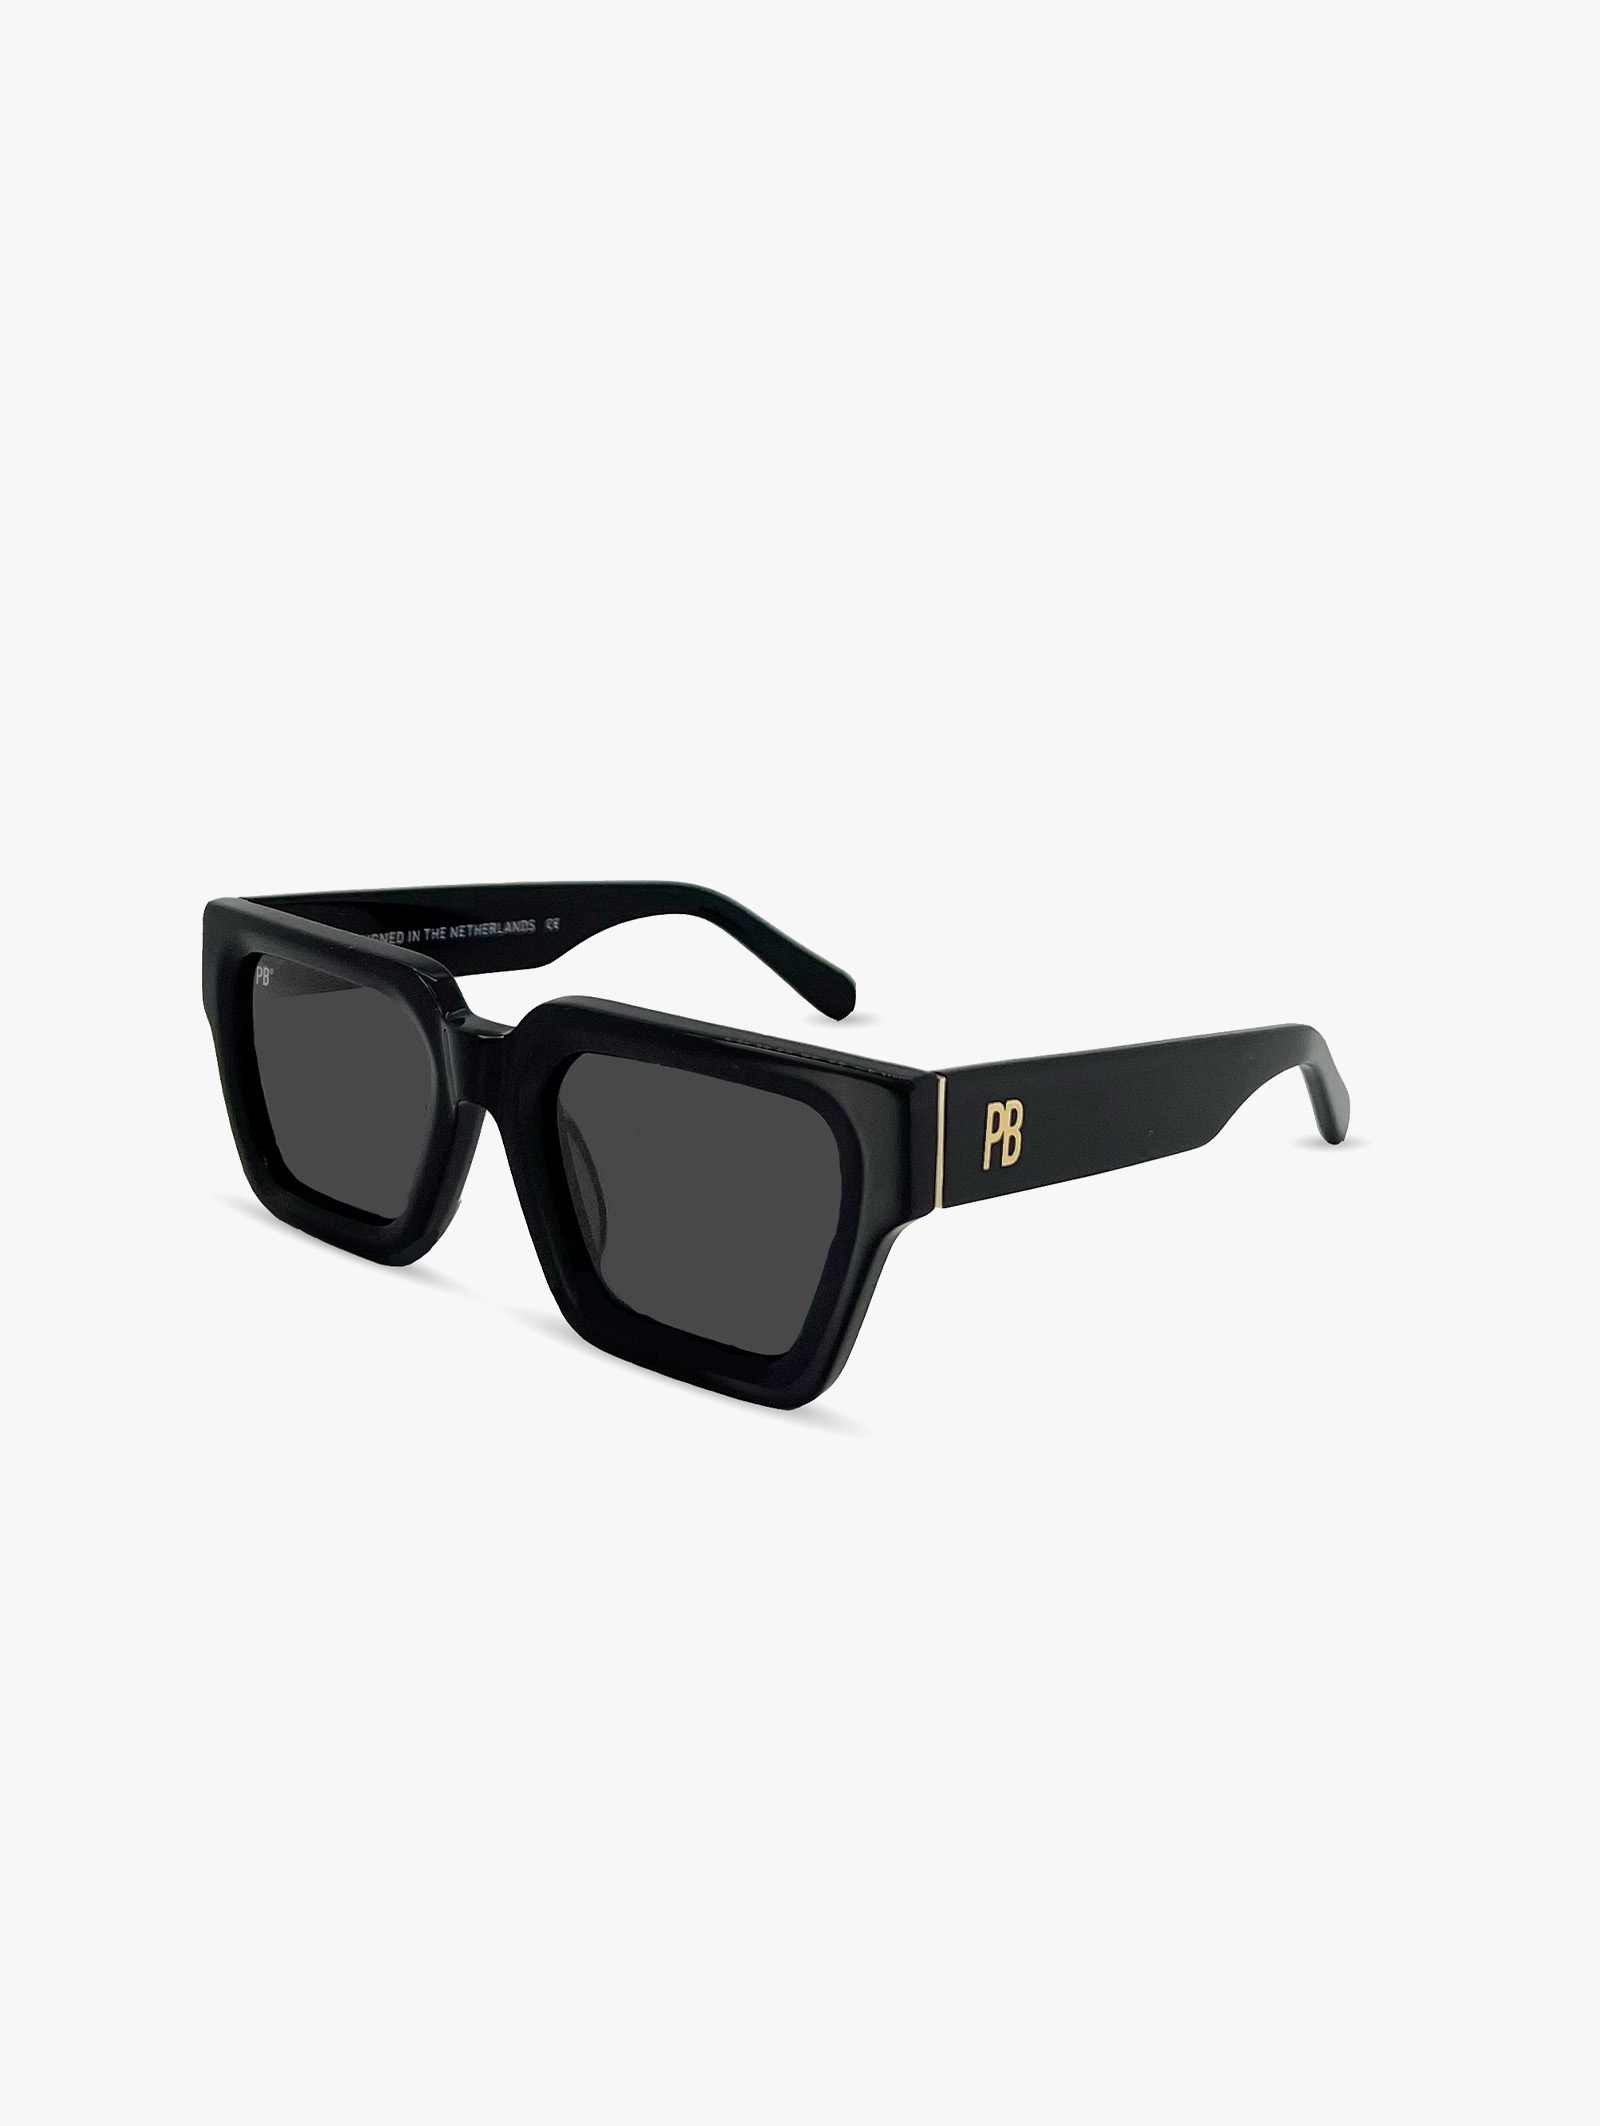 Stylische schwarze Premium-Sonnenbrille von PB Sunglasses für Frauen und Männer